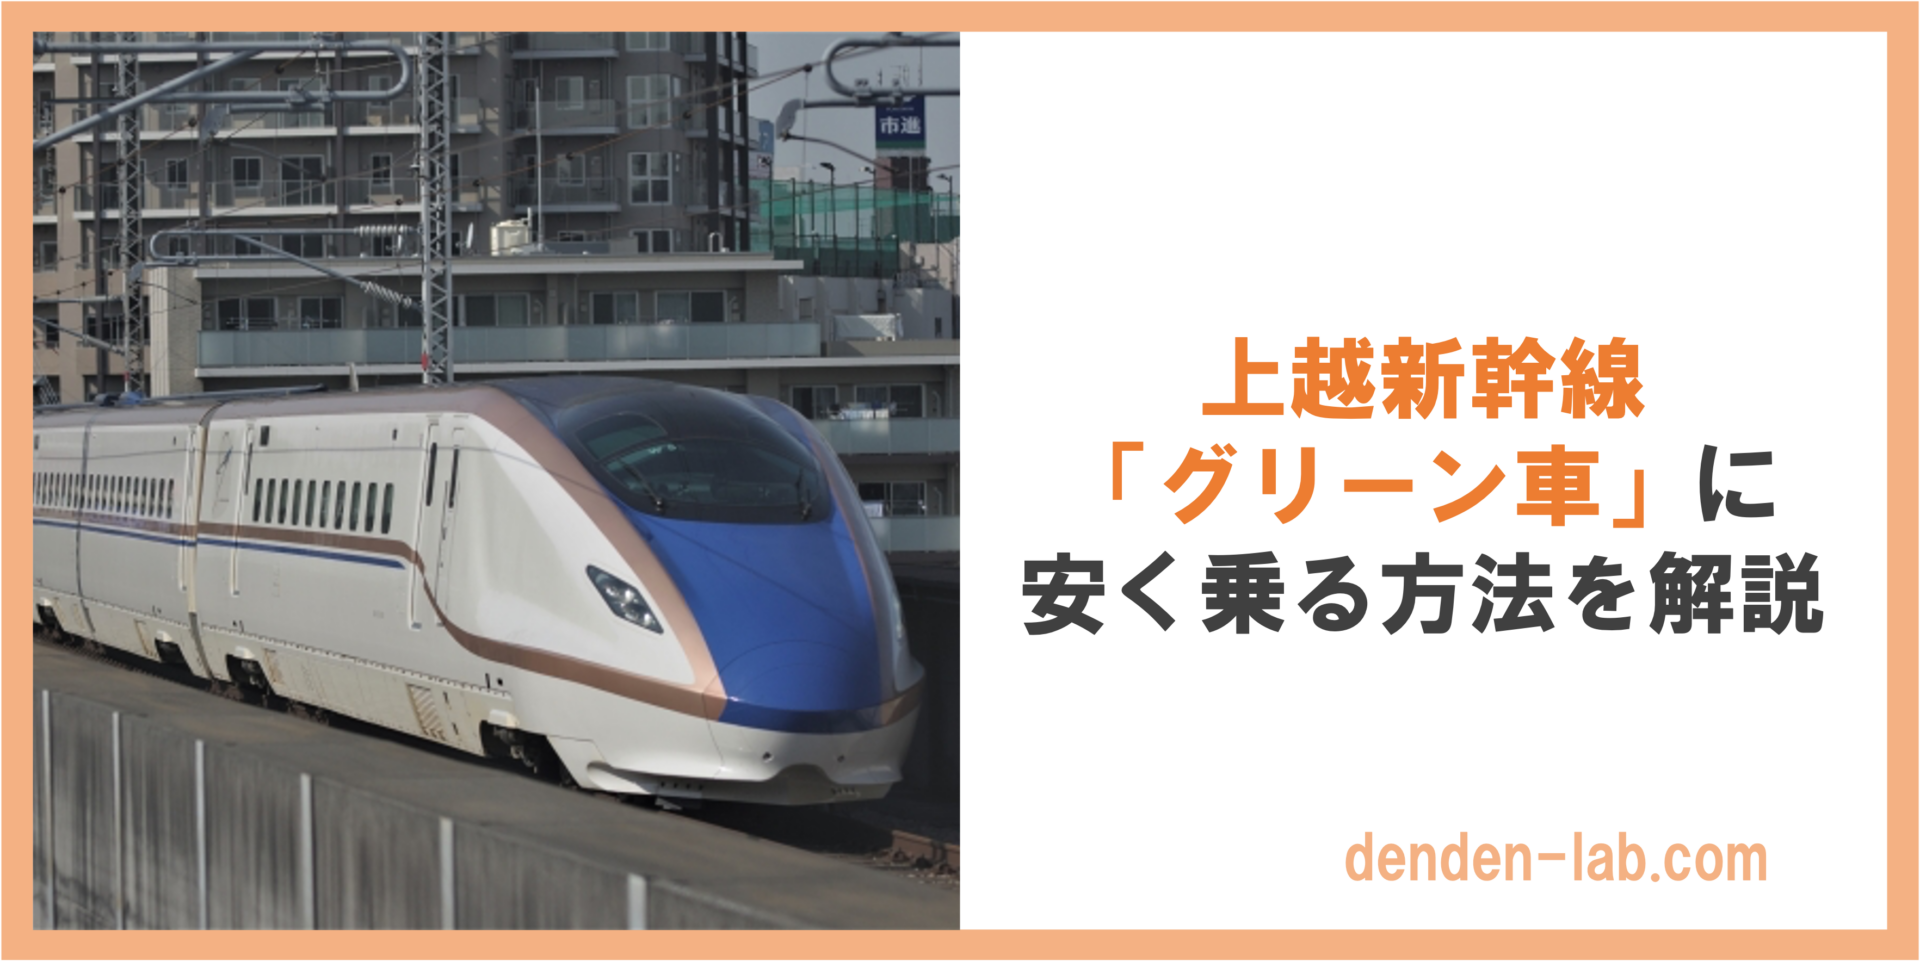 上越新幹線 「グリーン車」に 安く乗る方法を解説